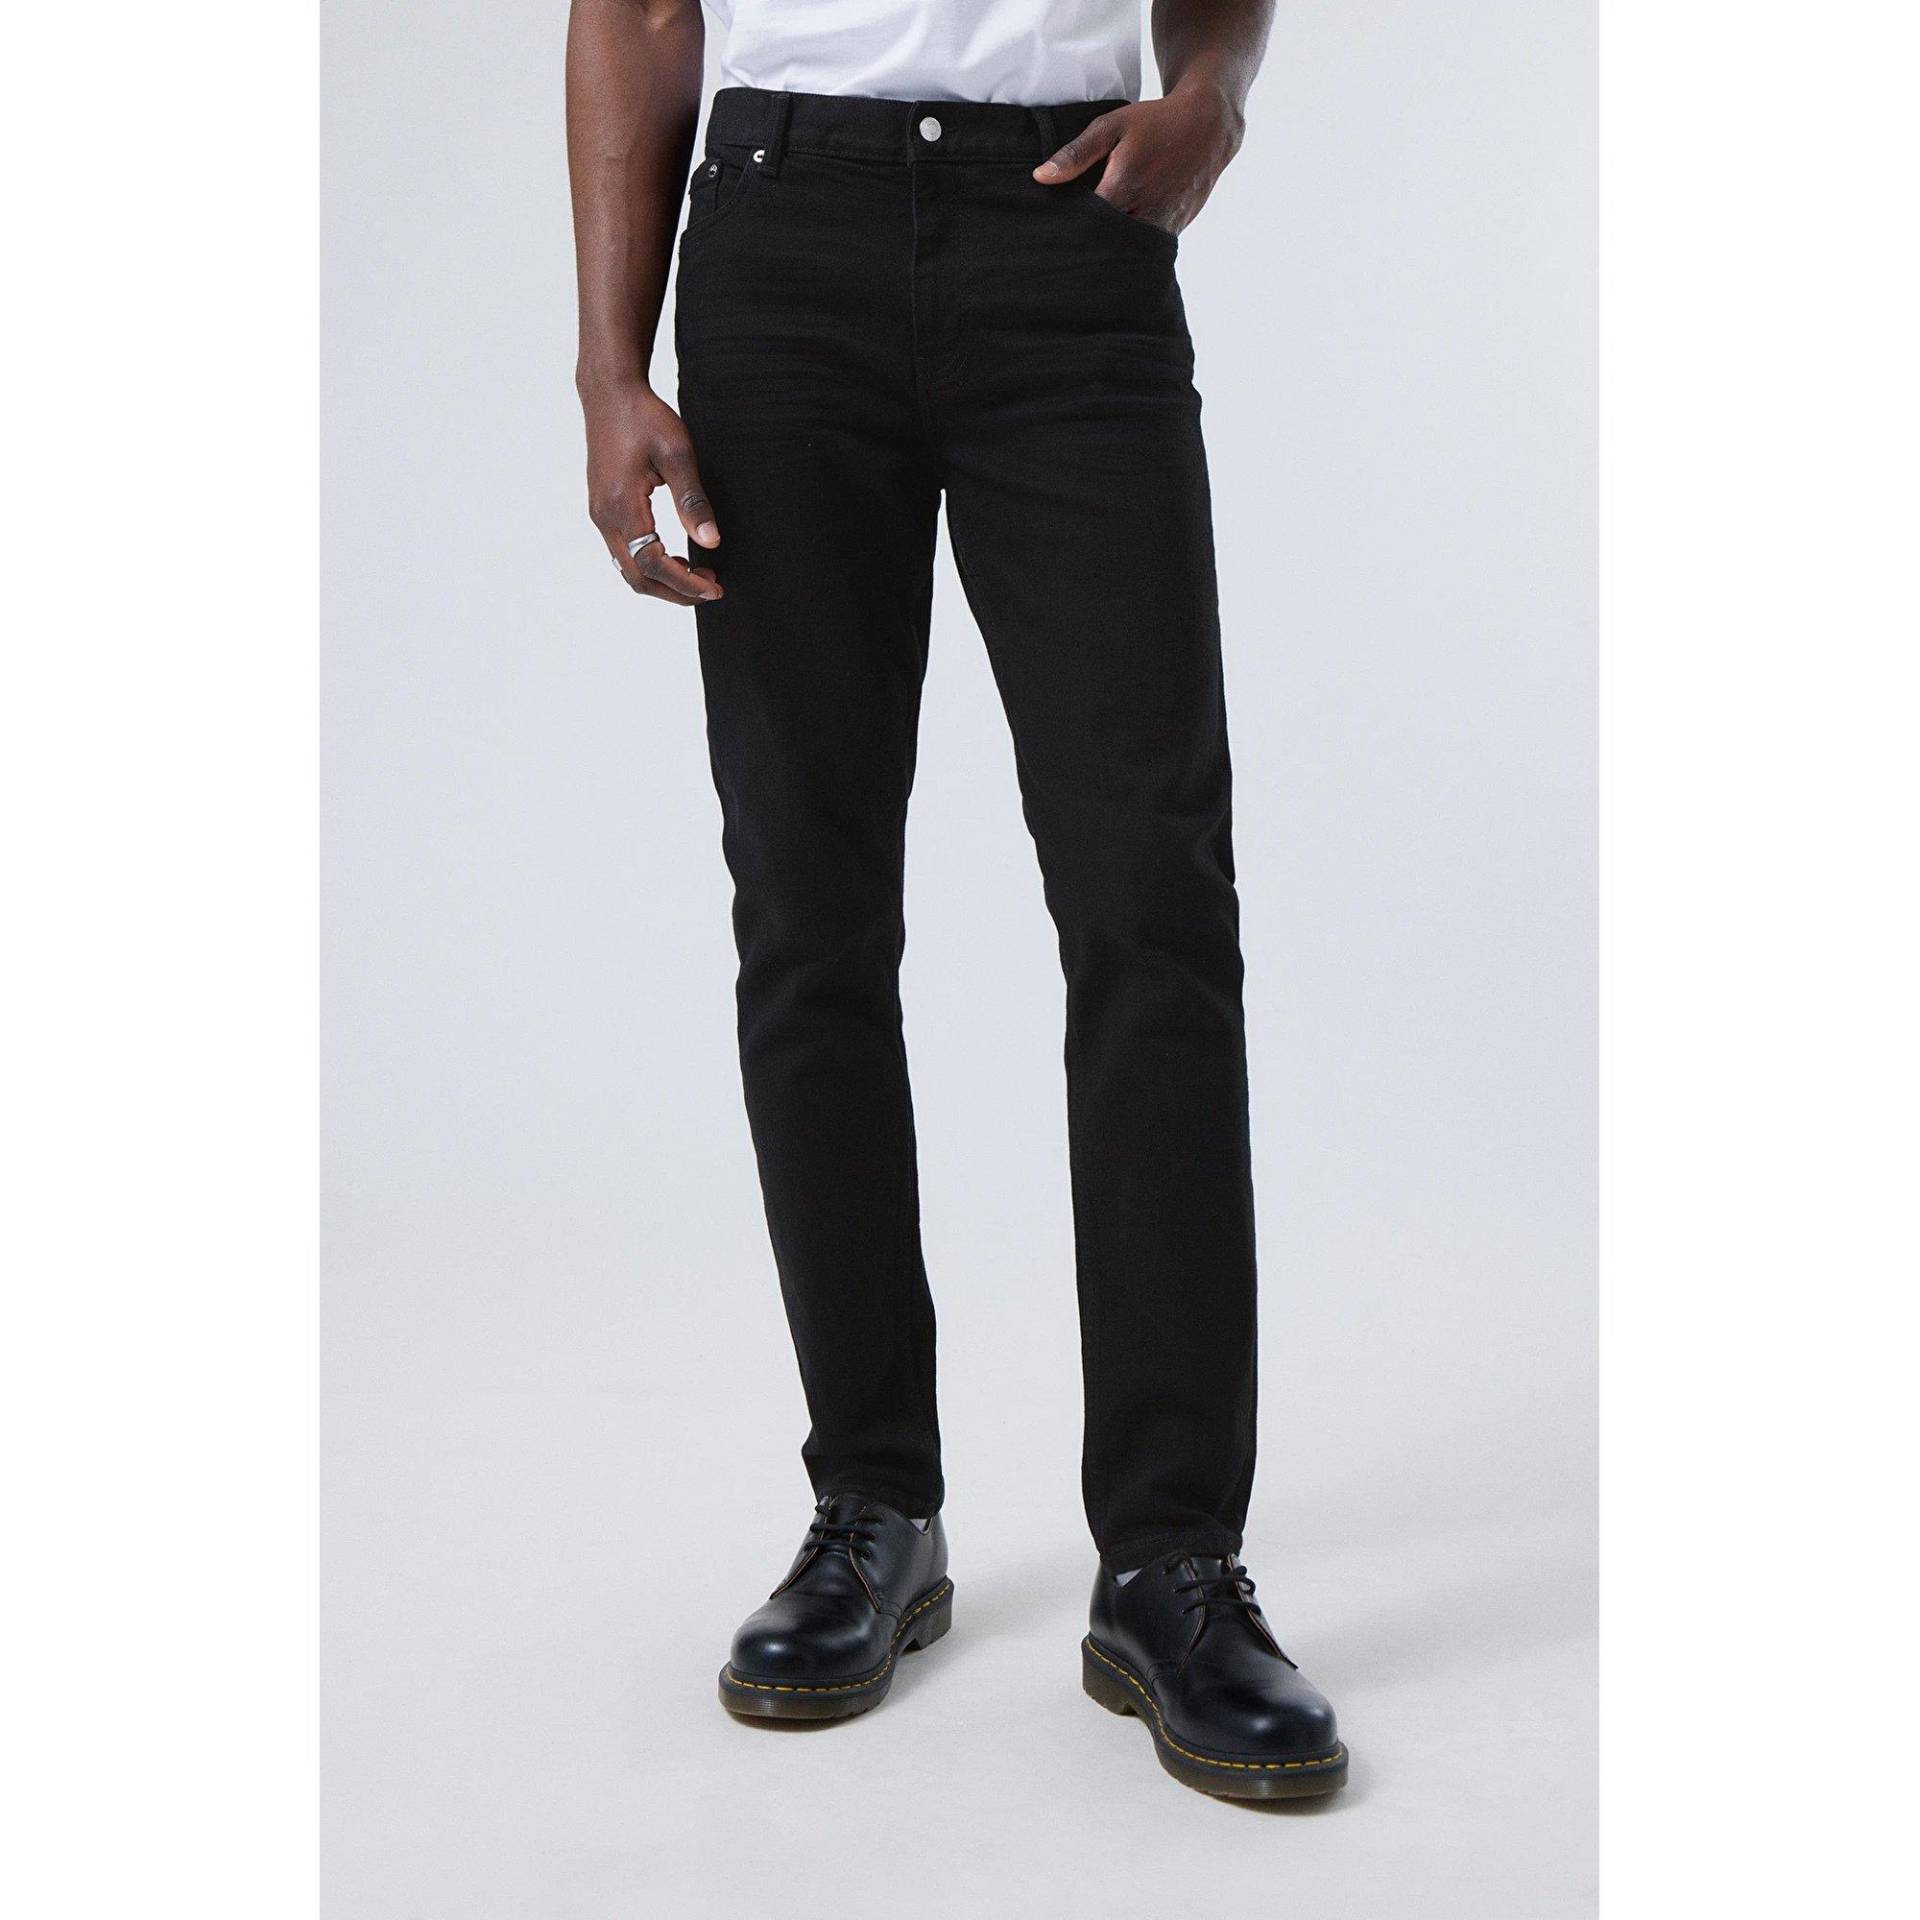 Jeans, Tapered Fit Herren Black L30/W30 von WEEKDAY